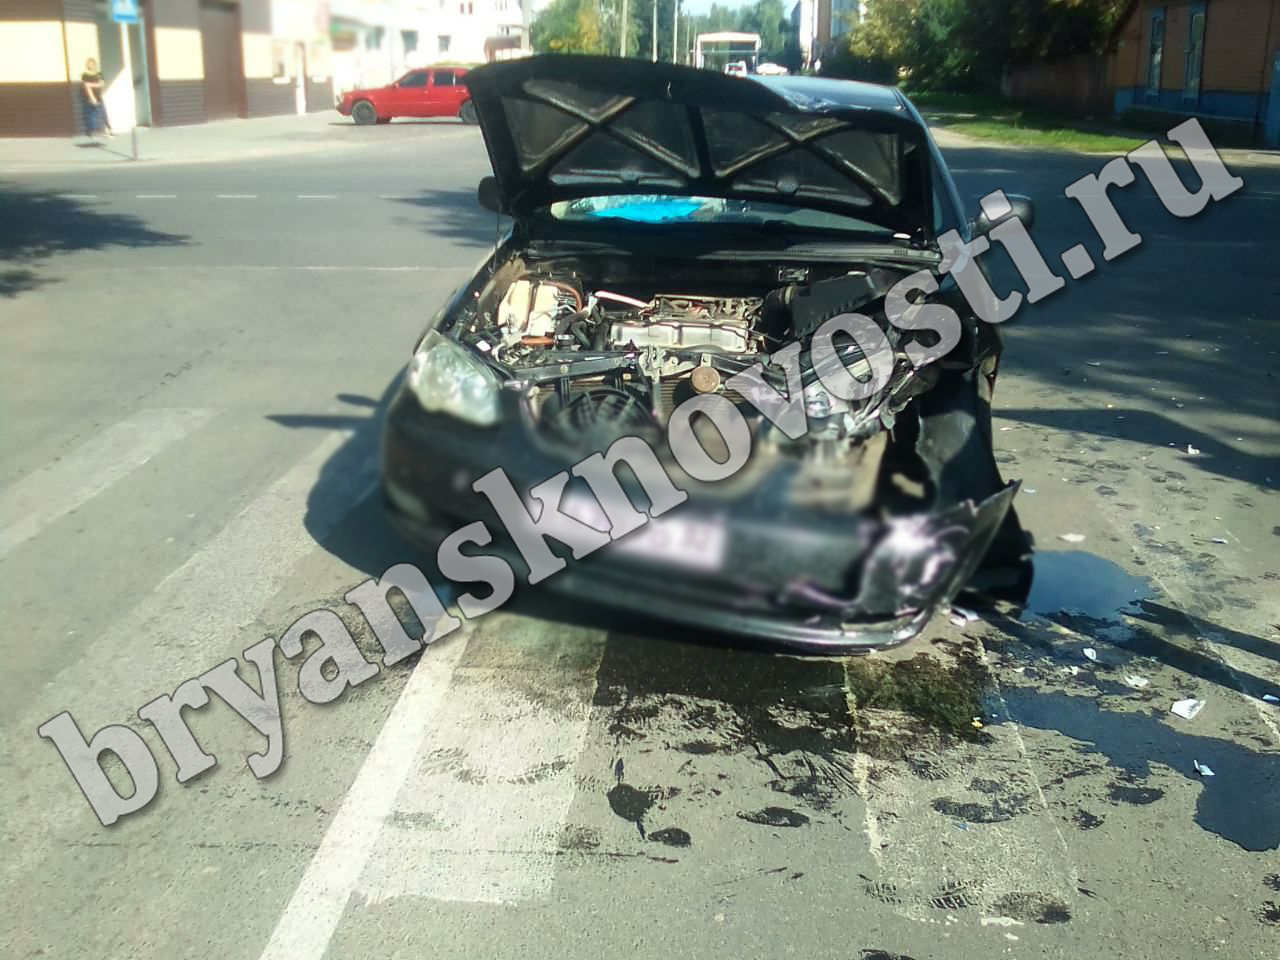 Сегодня в Новозыбкове водитель страшно разбил автомобиль. Люди не пострадали